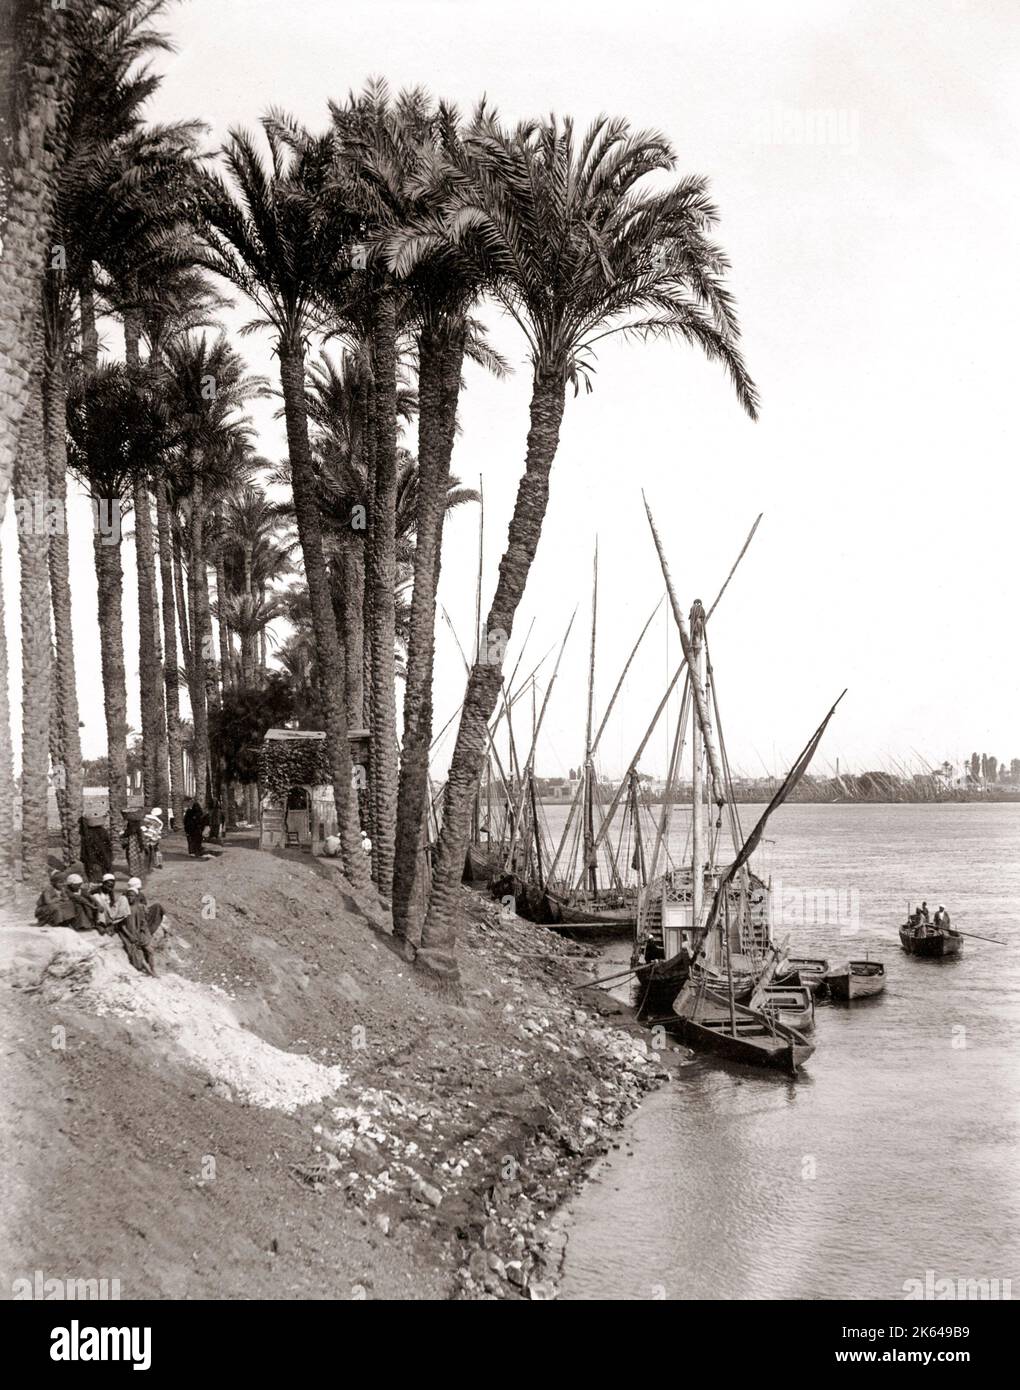 Années 1880 - bateaux de rivière sur les rives du Nil Banque D'Images